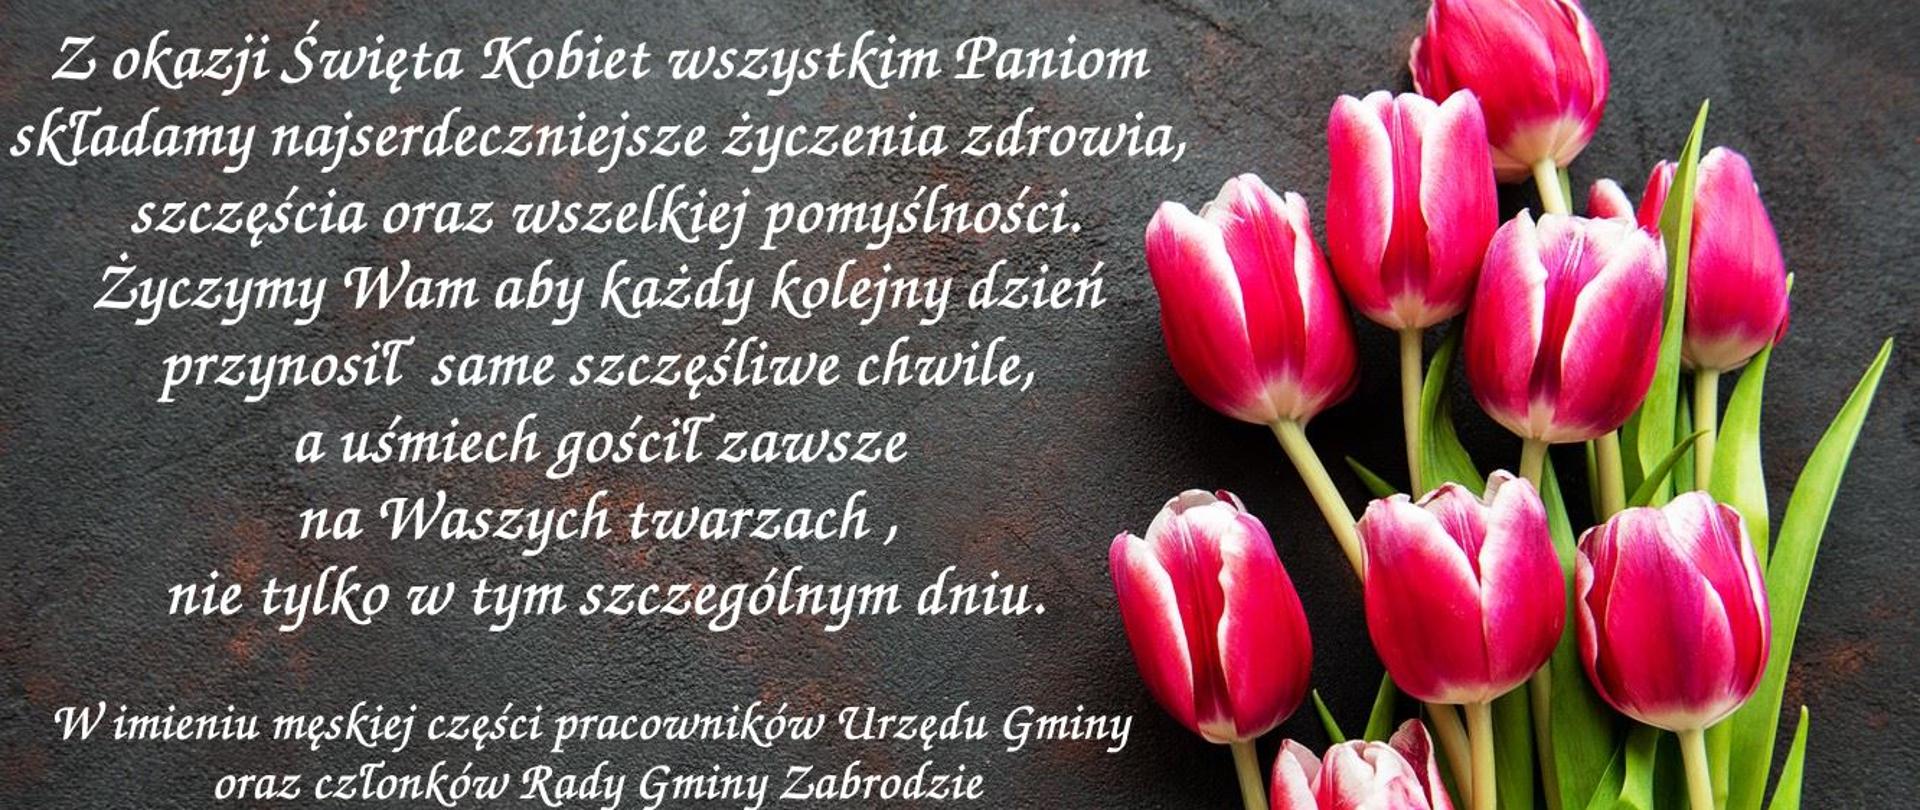 Czerwone tulipany z zielonymi łodygami po prawej stronie. Czarne tło a na nim napis: Z okazji Święta Kobiet wszystkim Paniom składamy najserdeczniejsze życzenia zdrowia, szczęścia oraz wszelkiej pomyślności.
Życzymy Wam aby każdy kolejny dzień przynosił same szczęśliwe chwile, a uśmiech gościł zawsze na Waszych twarzach , nie tylko w tym szczególnym dniu.
W imieniu męskiej części pracowników Urzędu Gminy oraz członków Rady Gminy Zabrodzie
życzenia składają:
Wiceprzewodniczący Rady
Wiesław Jakubowski
Wójt Gminy Zabrodzie
Krzysztof Jezierski